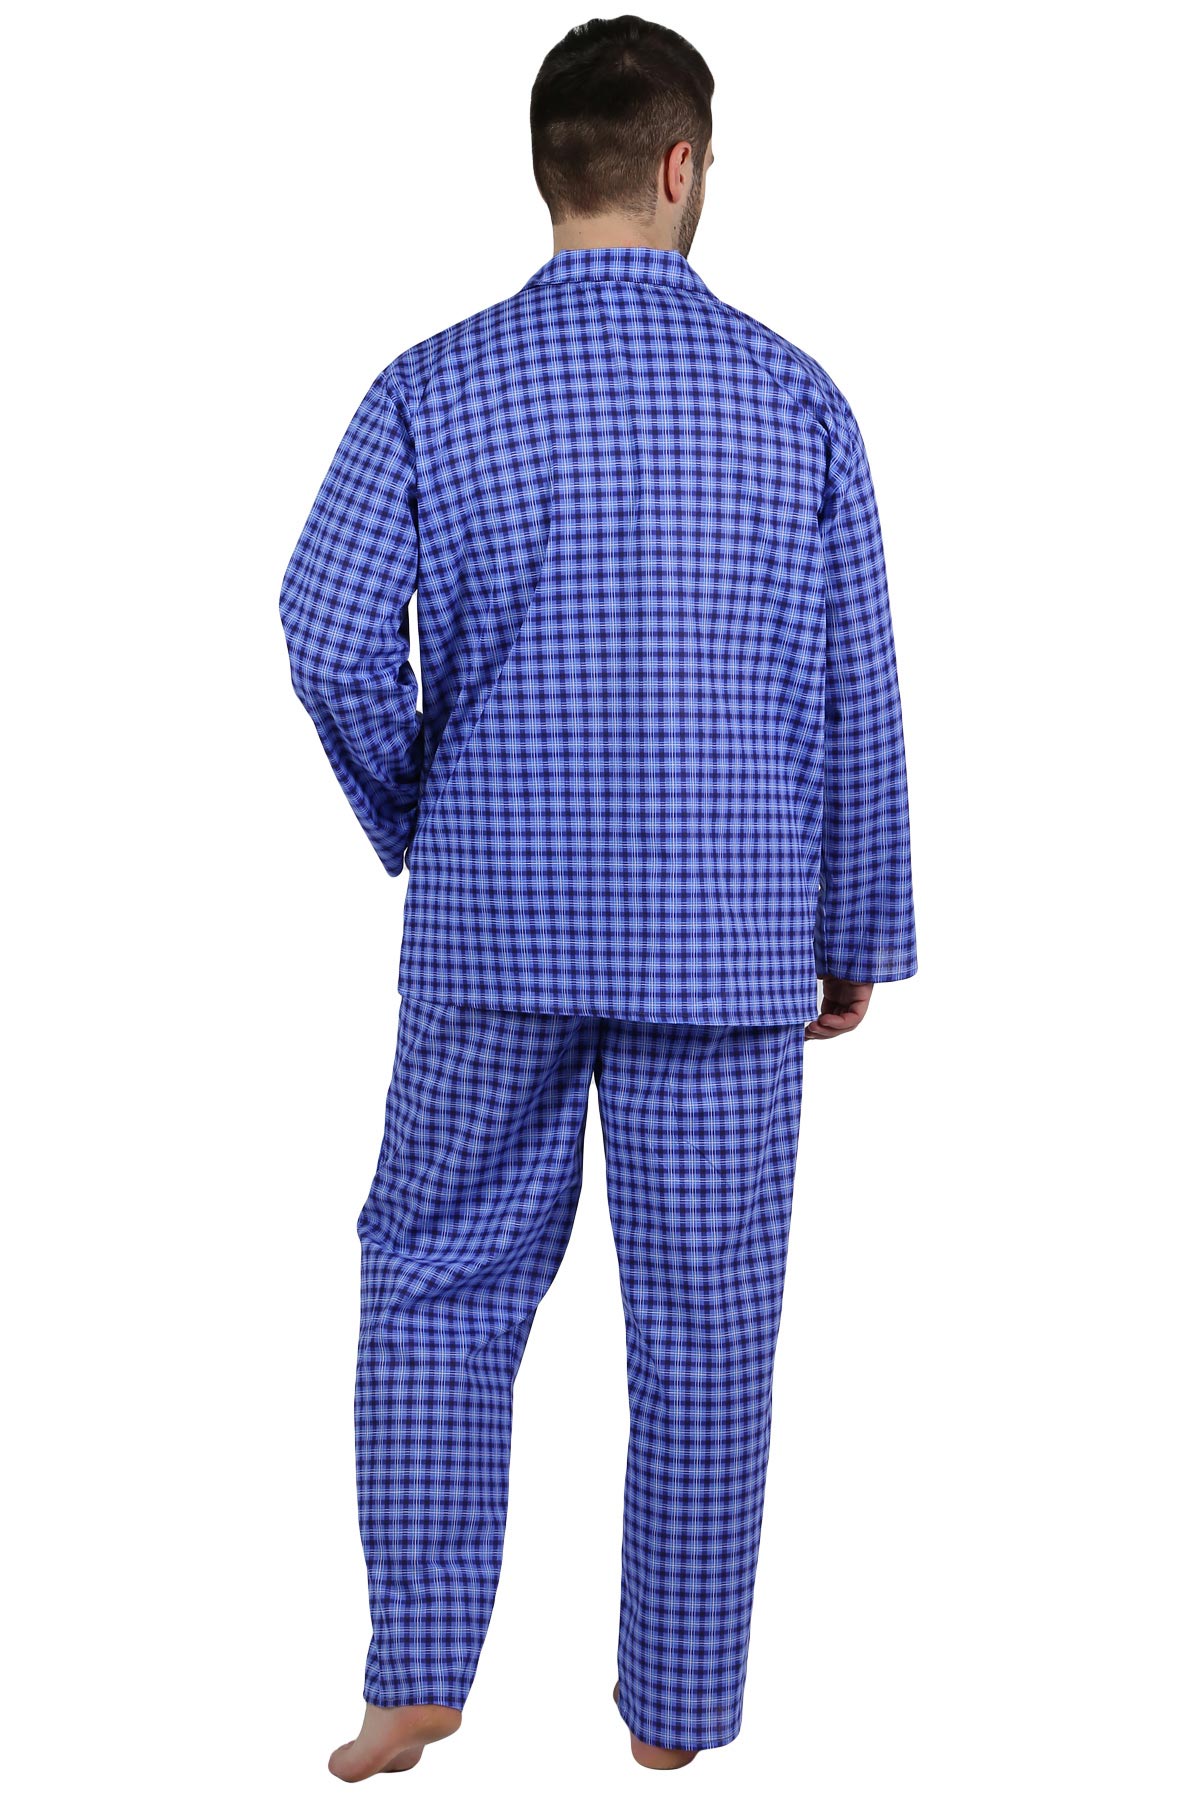 Муж. пижама арт. 22-0210 В ассортименте р. 58 Оптима трикотаж, размер 58 - фото 3